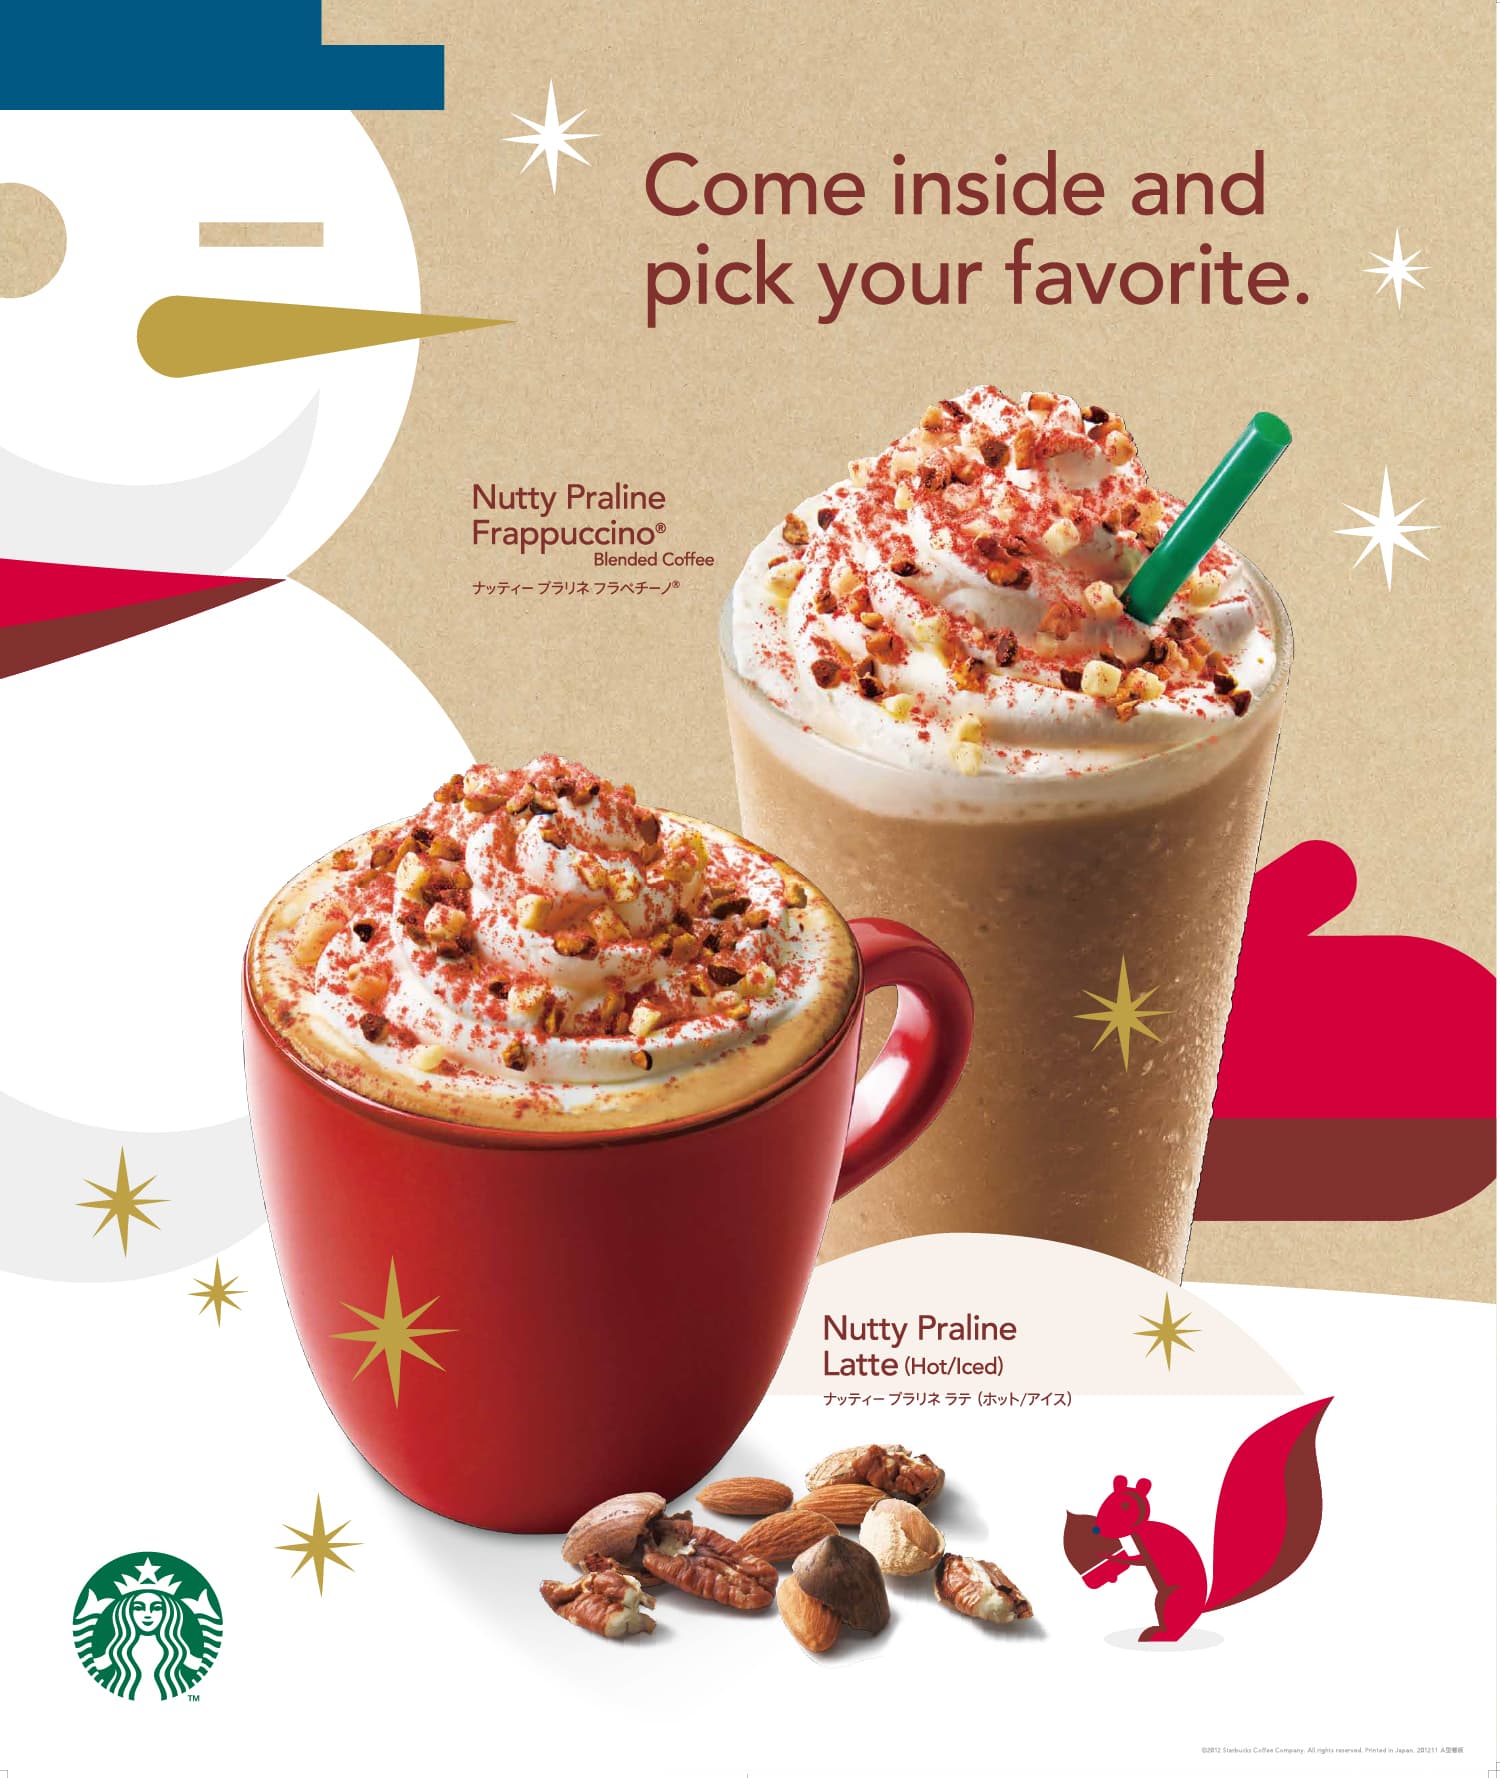 Starbucks Campaign Visual | Sine & Co.